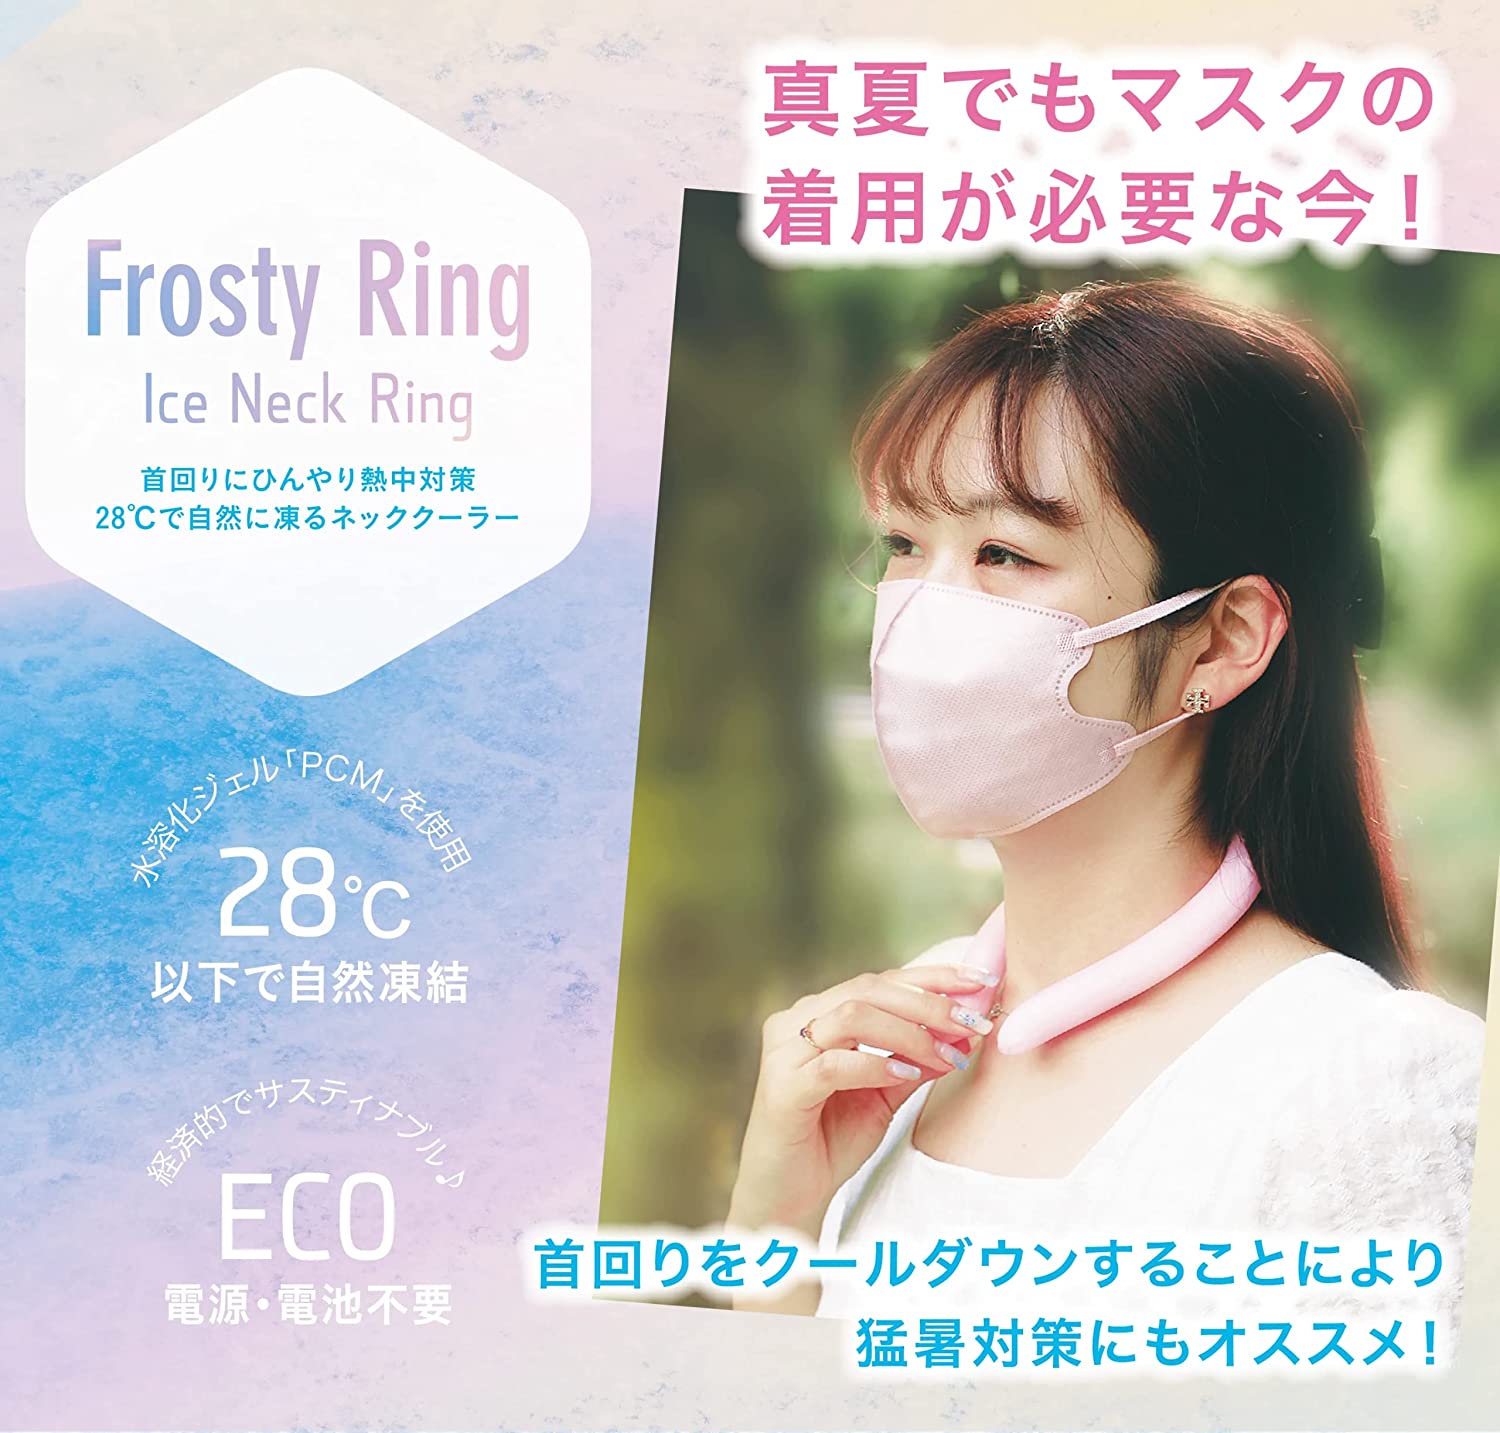 ネッククーラー Frosty Ring フロスティリング アルミパック ブルー Mサイズ 猛暑対策 熱中症対策 冷感グッズ クールリング アイスリング  ひんやりグッズ 接触冷感 冷却 クール 爽快 解熱 夏用品 1個 シェア買いならシェアモル（旧ショッピン）